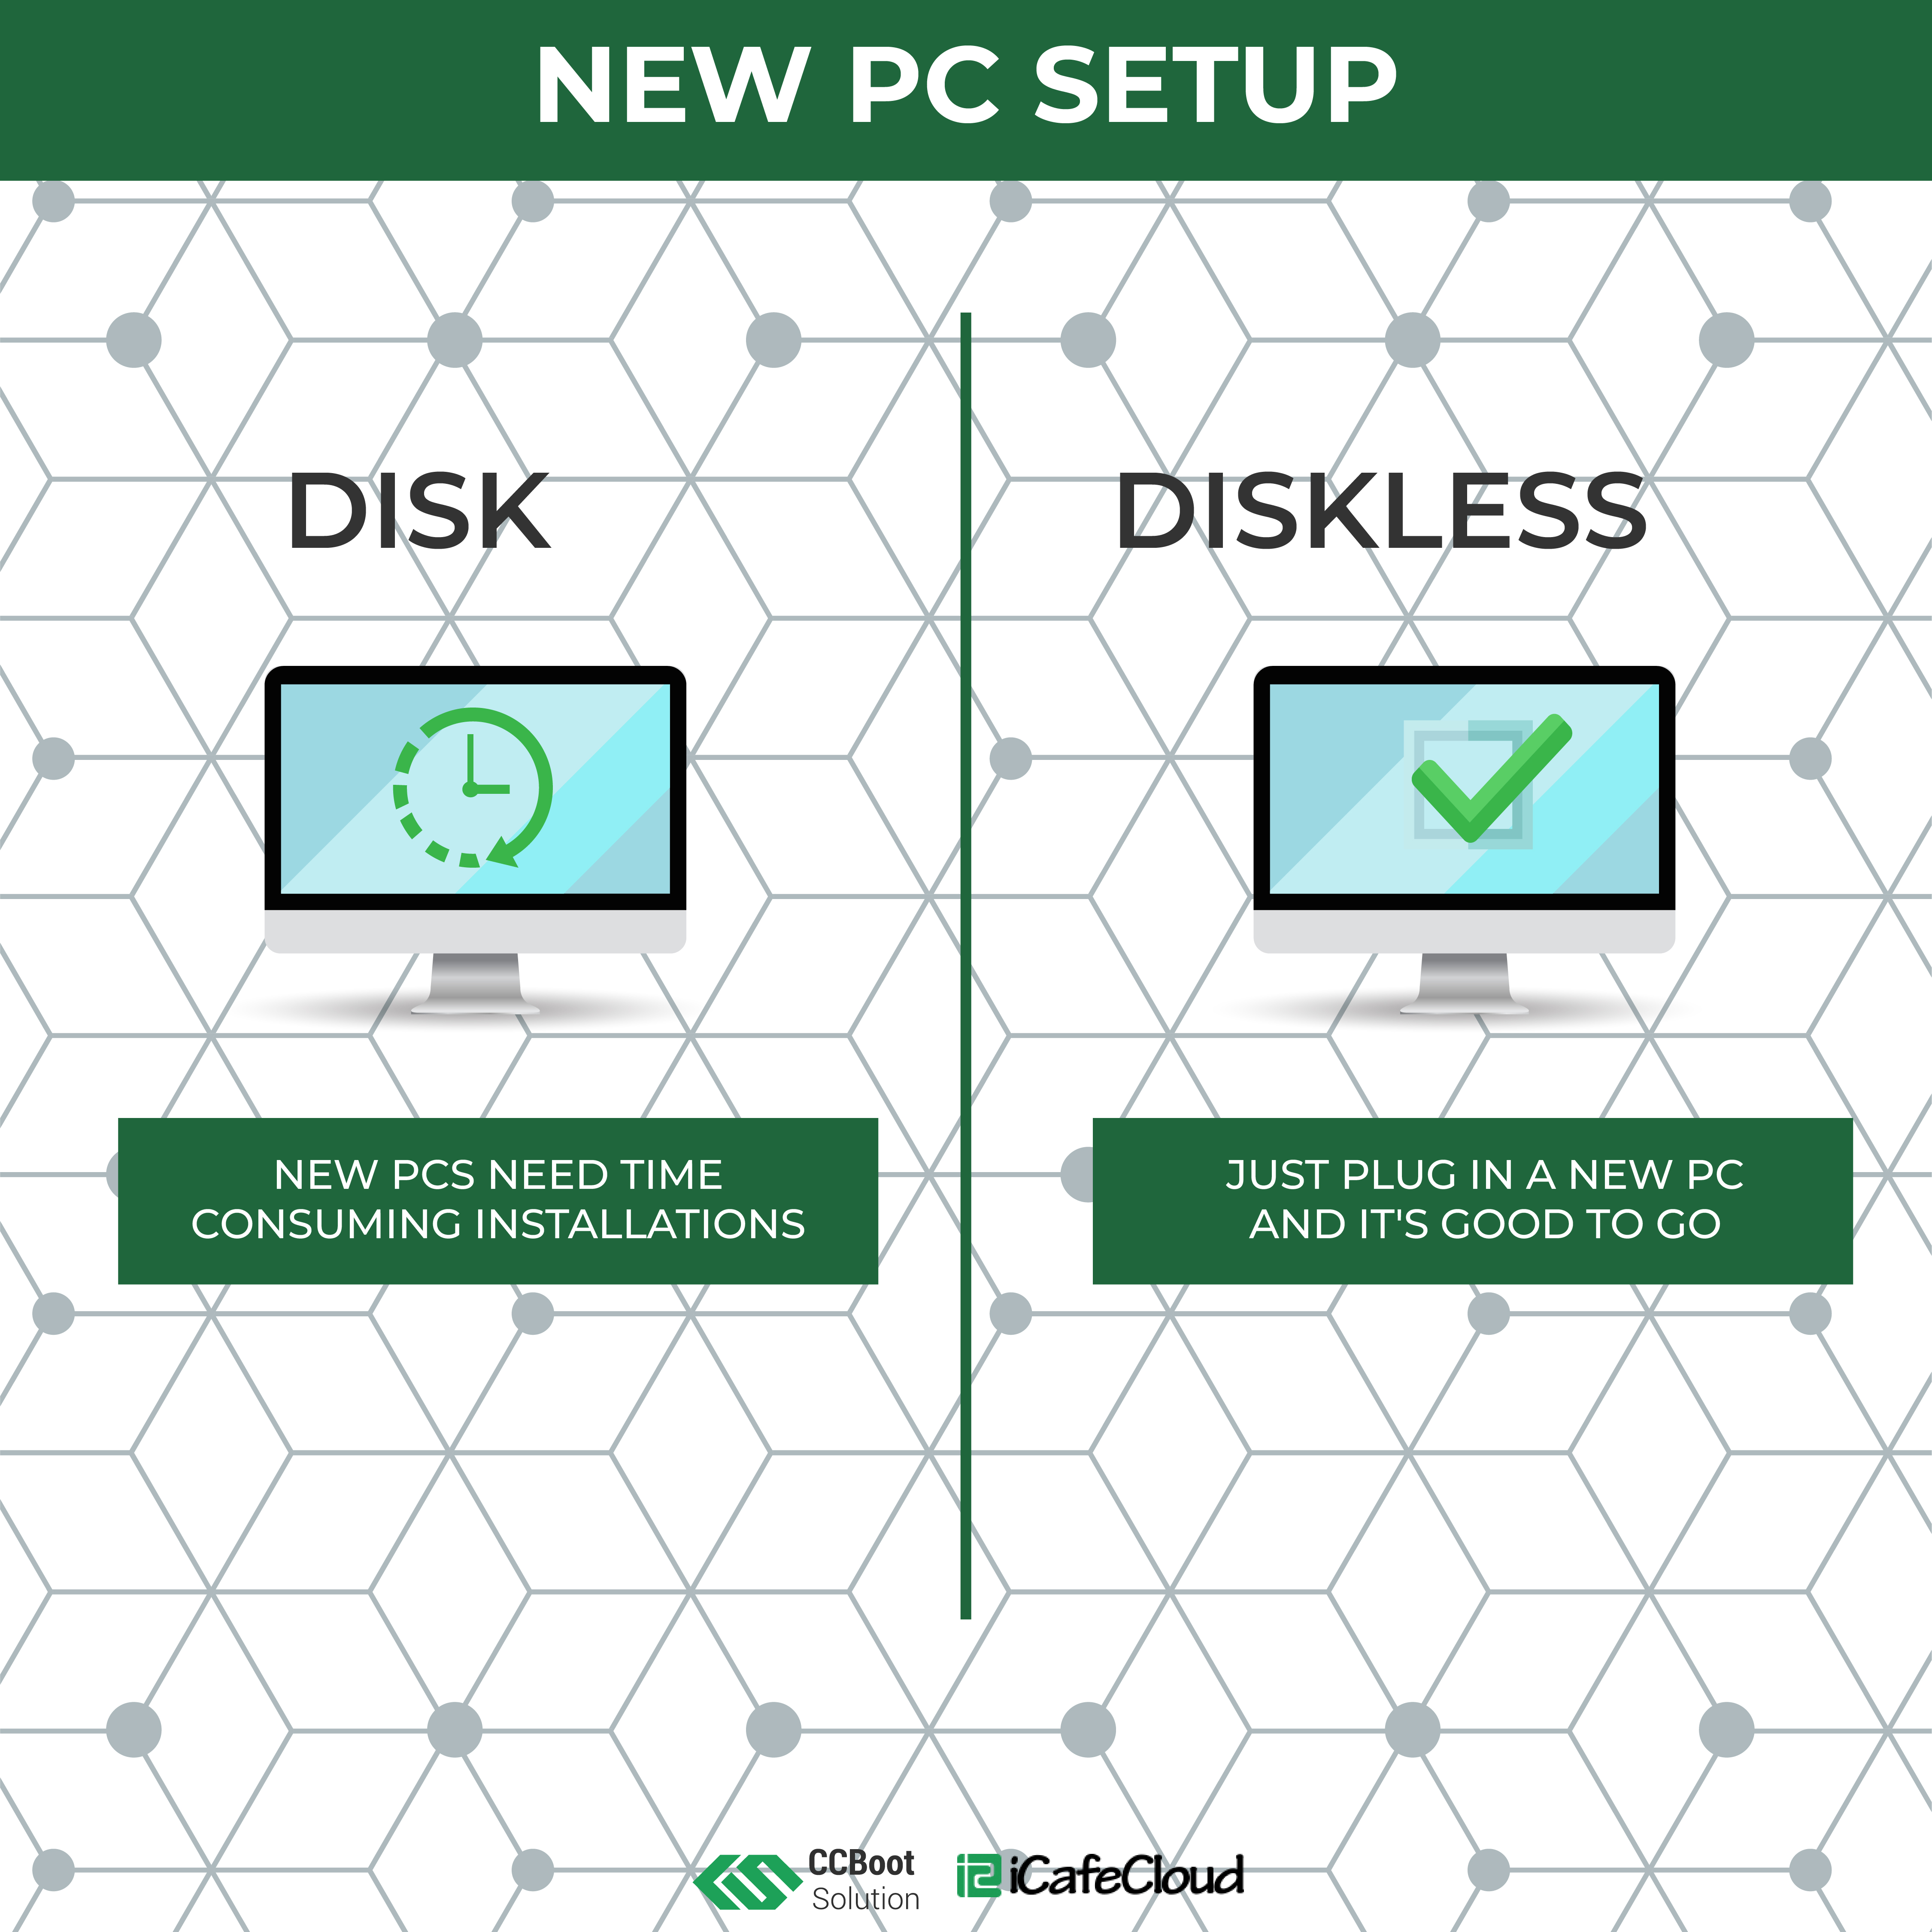 Adding New PCs